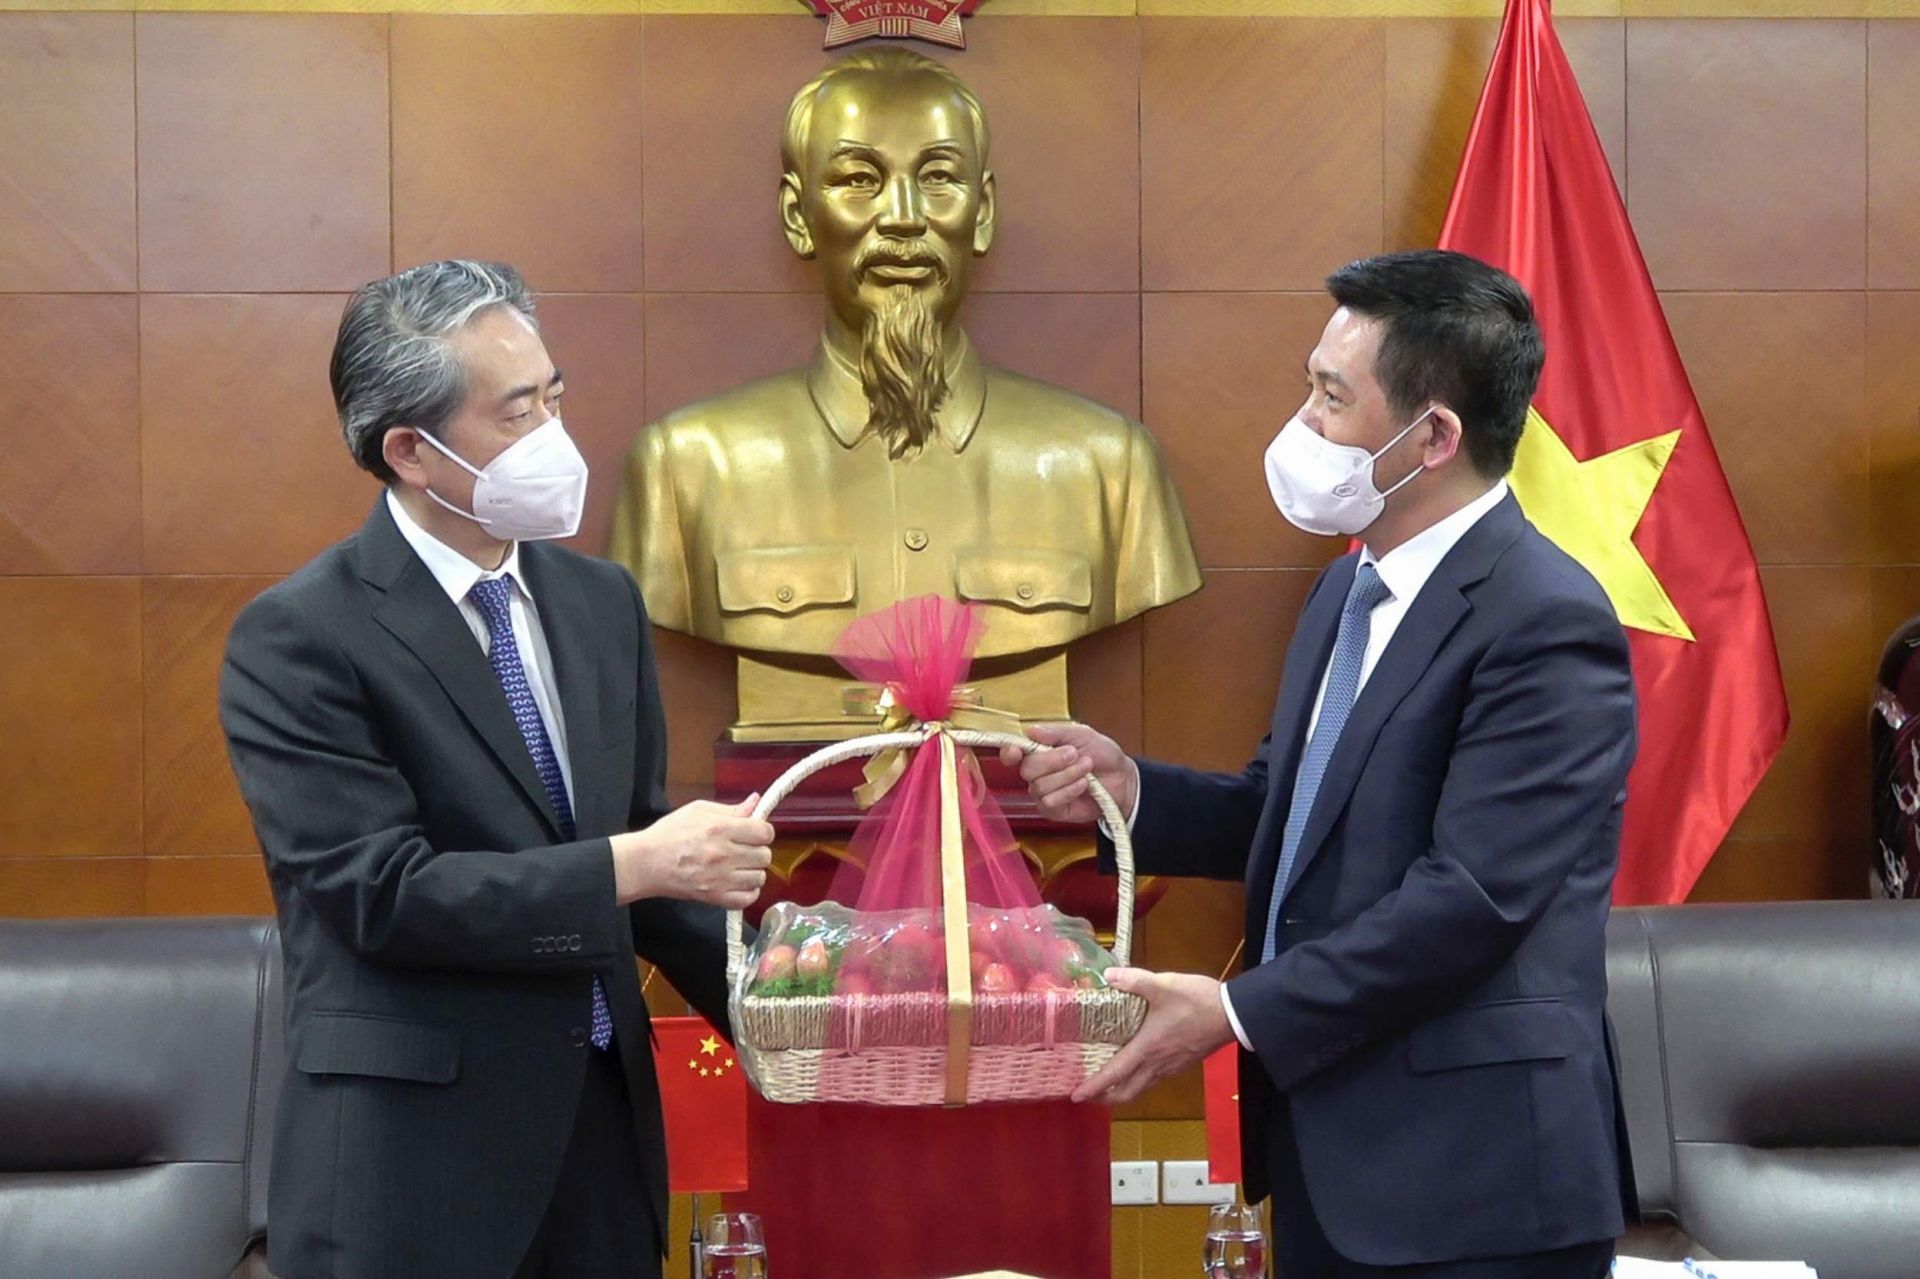 Bộ trưởng Nguyễn Hồng Diên trao tặng Đại sứ quán Trung Quốc món quà là những quả vải đang trong vụ mùa thu hoạch của Việt Nam, cảm ơn Đại sứ quán hỗ trợ hoạt động xuất khẩu nông sản nói chung và quả vải nói riêng trong thời gian qua cũng như giai đoạn sắp tới